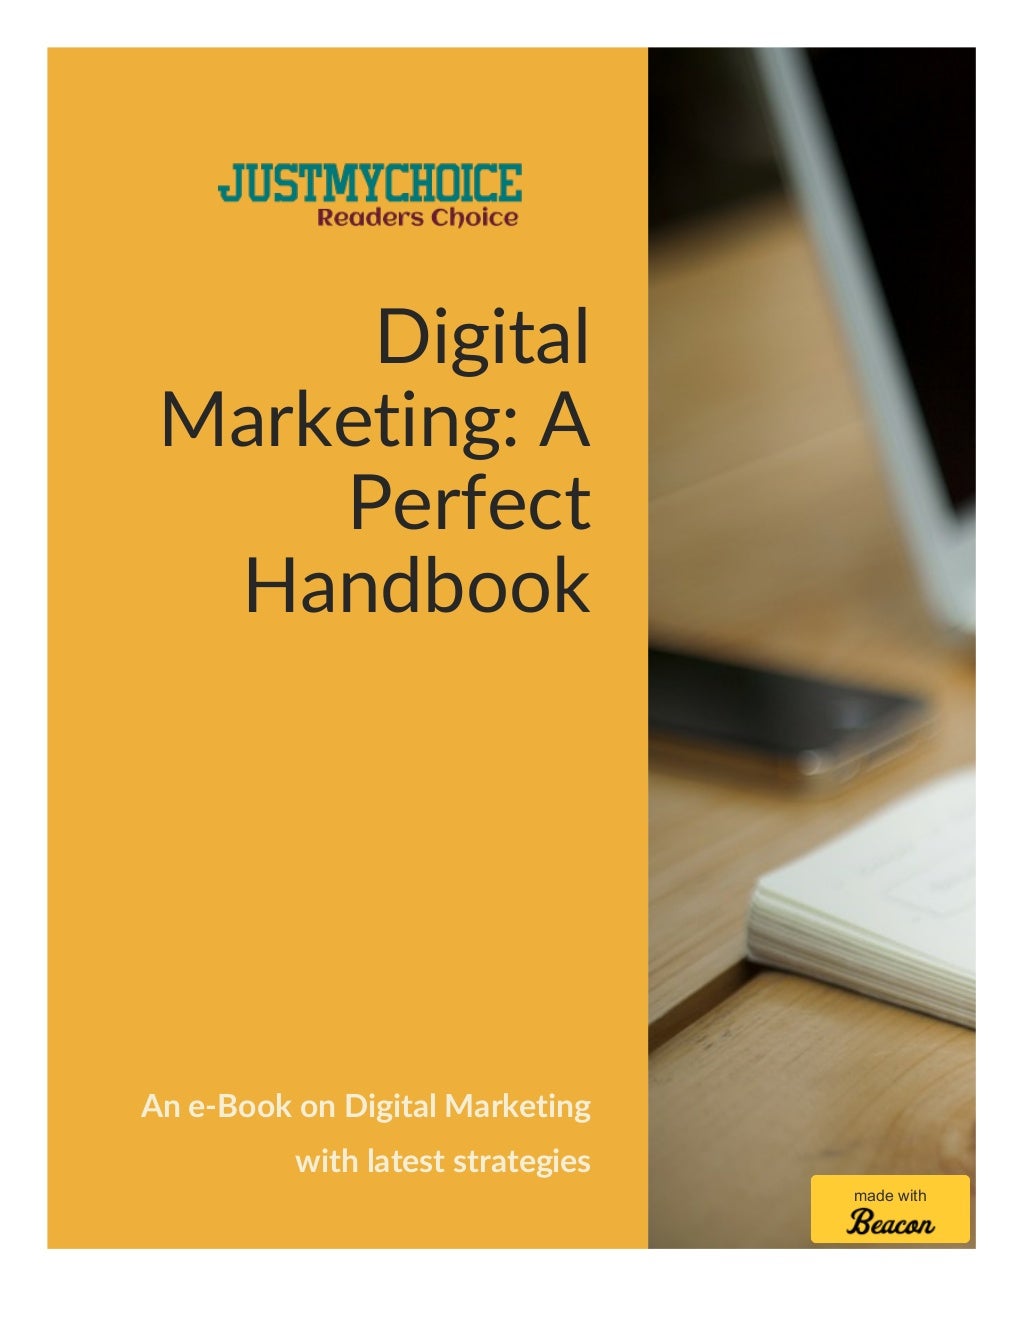 Digital marketing: An e-Book